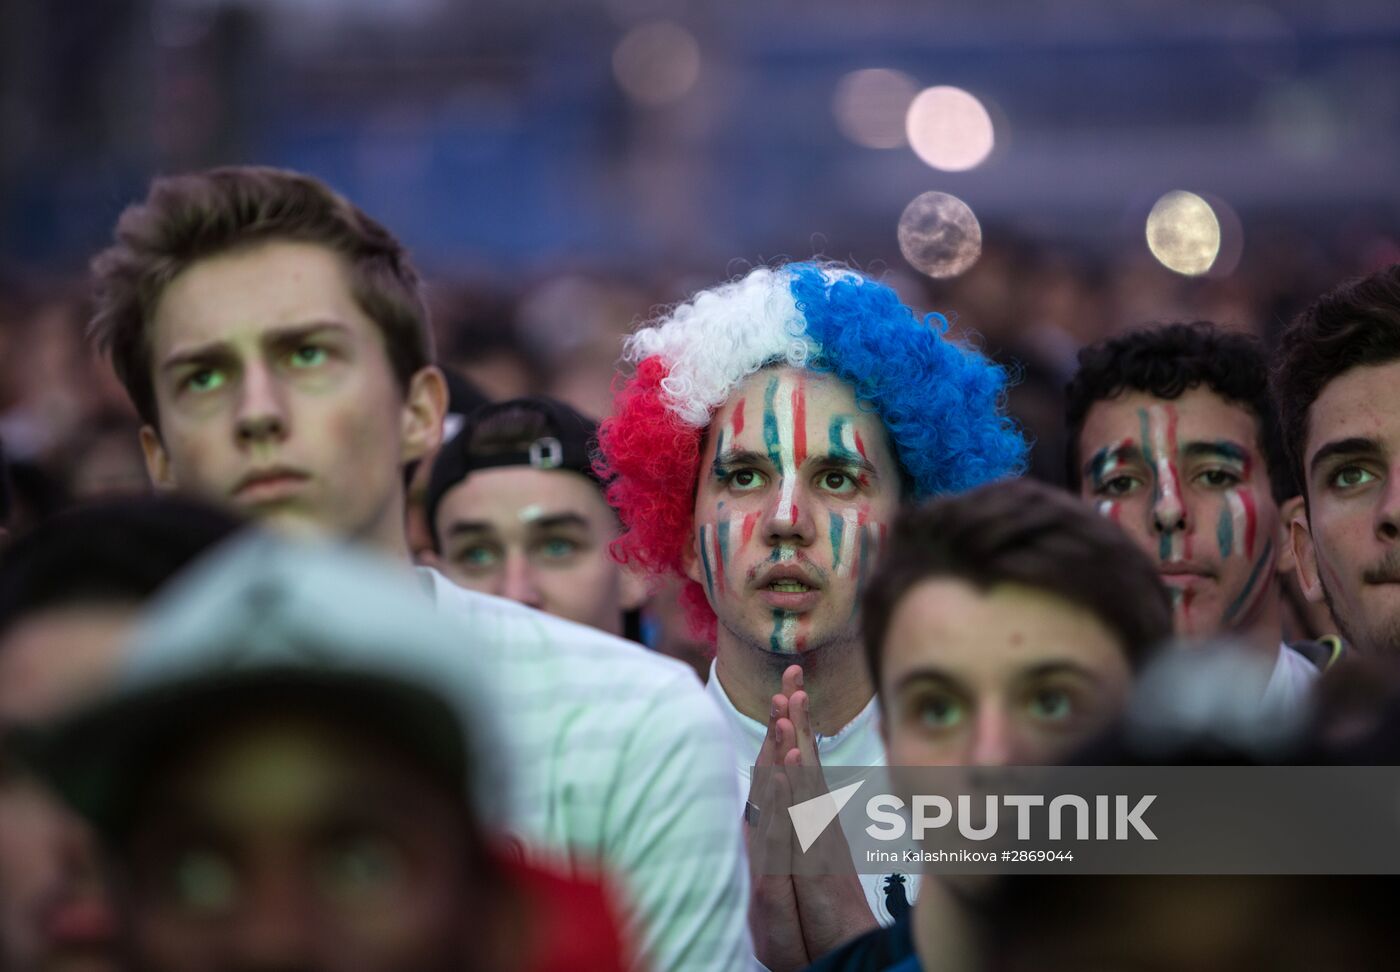 Euro 2016 opening match broadcast in fan zones across France